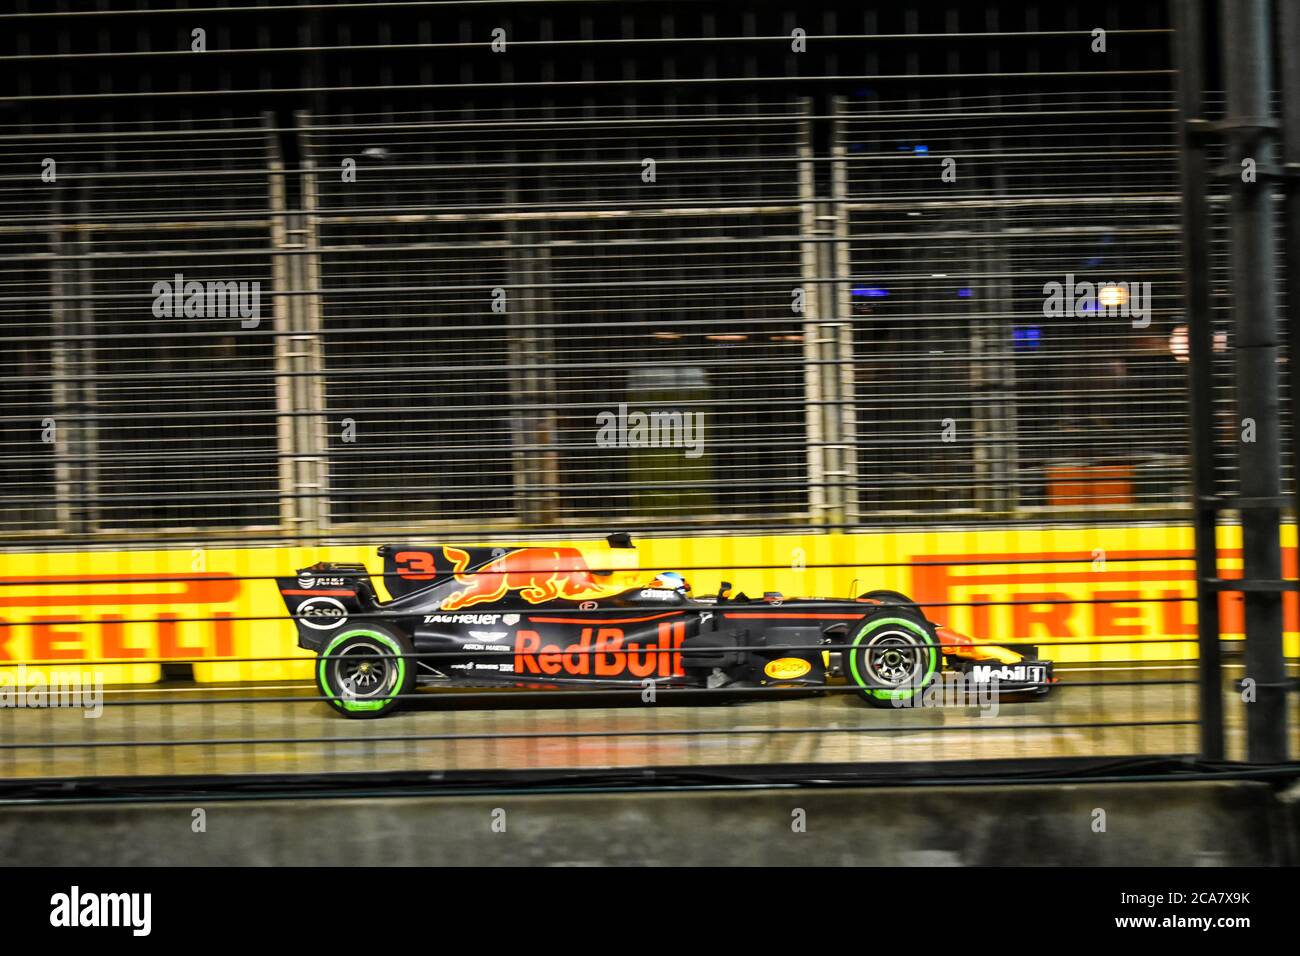 Daniel Ricciardo at the 2017 Singapore F1 Grand Prix Stock Photo